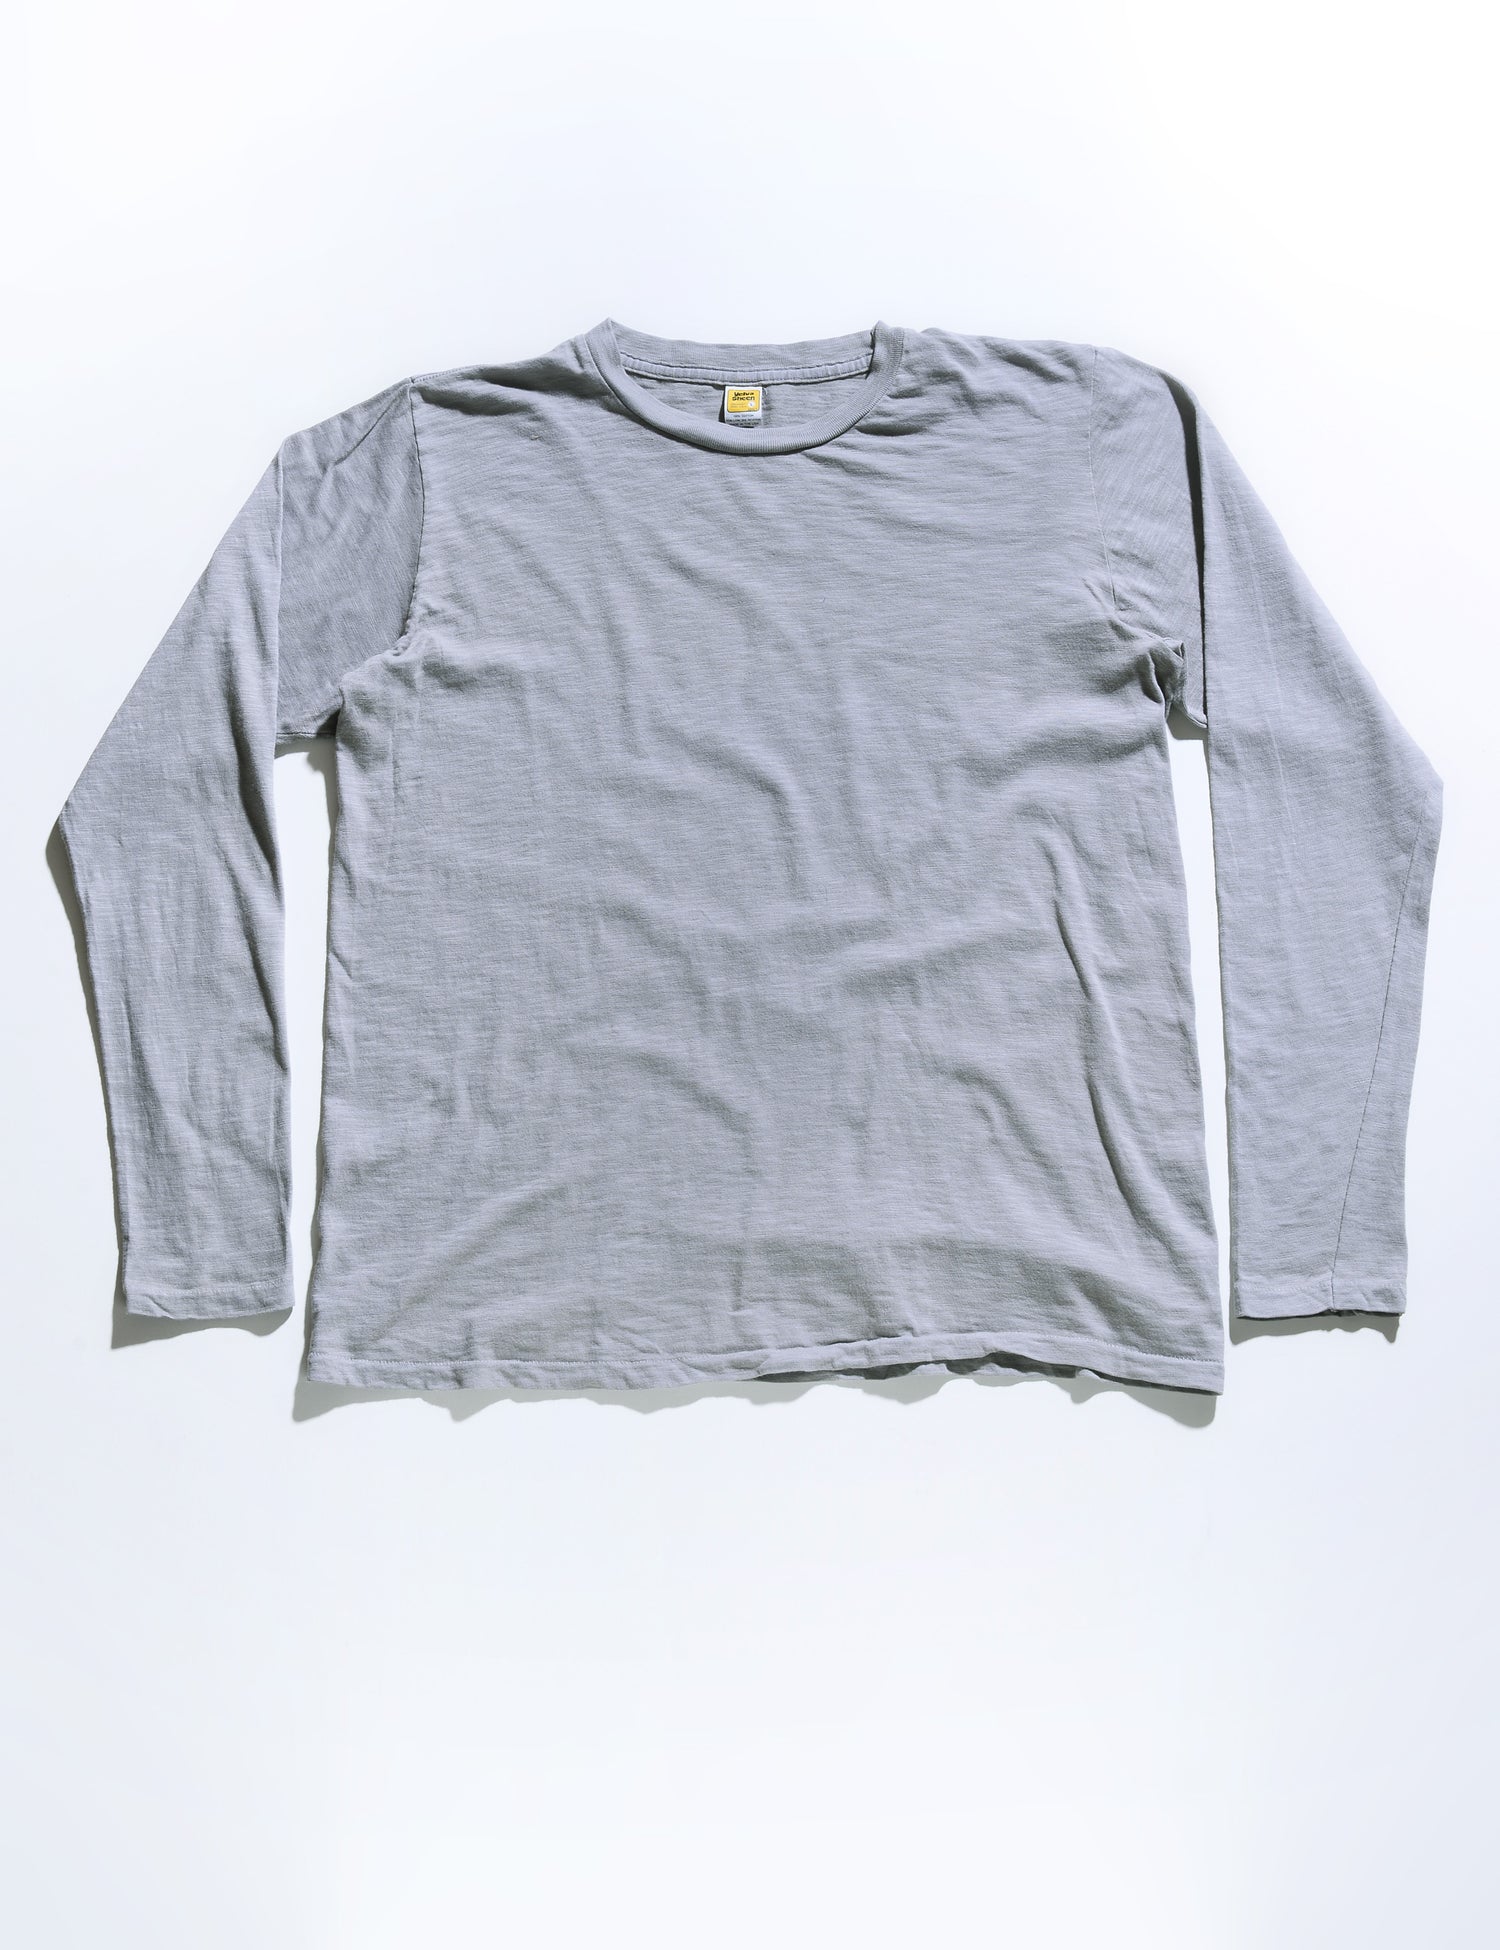 Full length flat shot of Velva Sheen Long Sleeve Crewneck T-Shirt in Gray